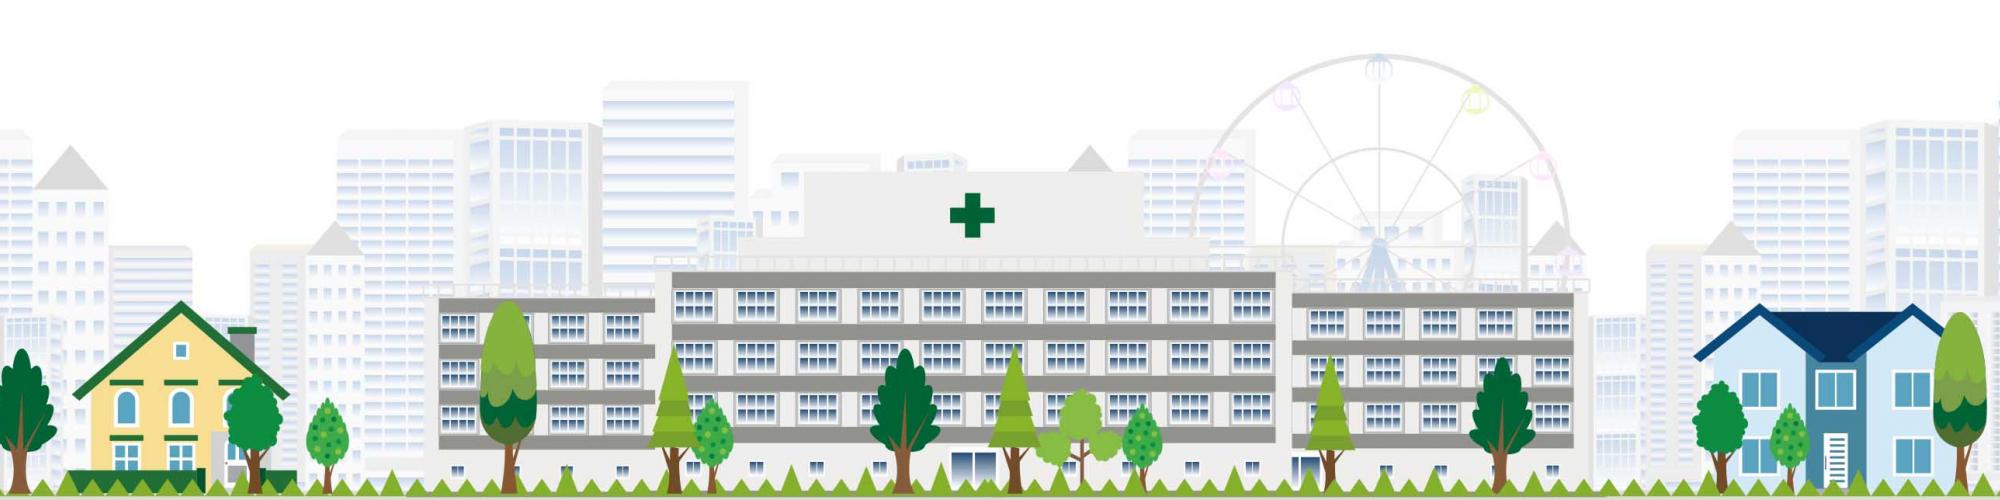 Städtisches Krankenhaus Kiel GmbH